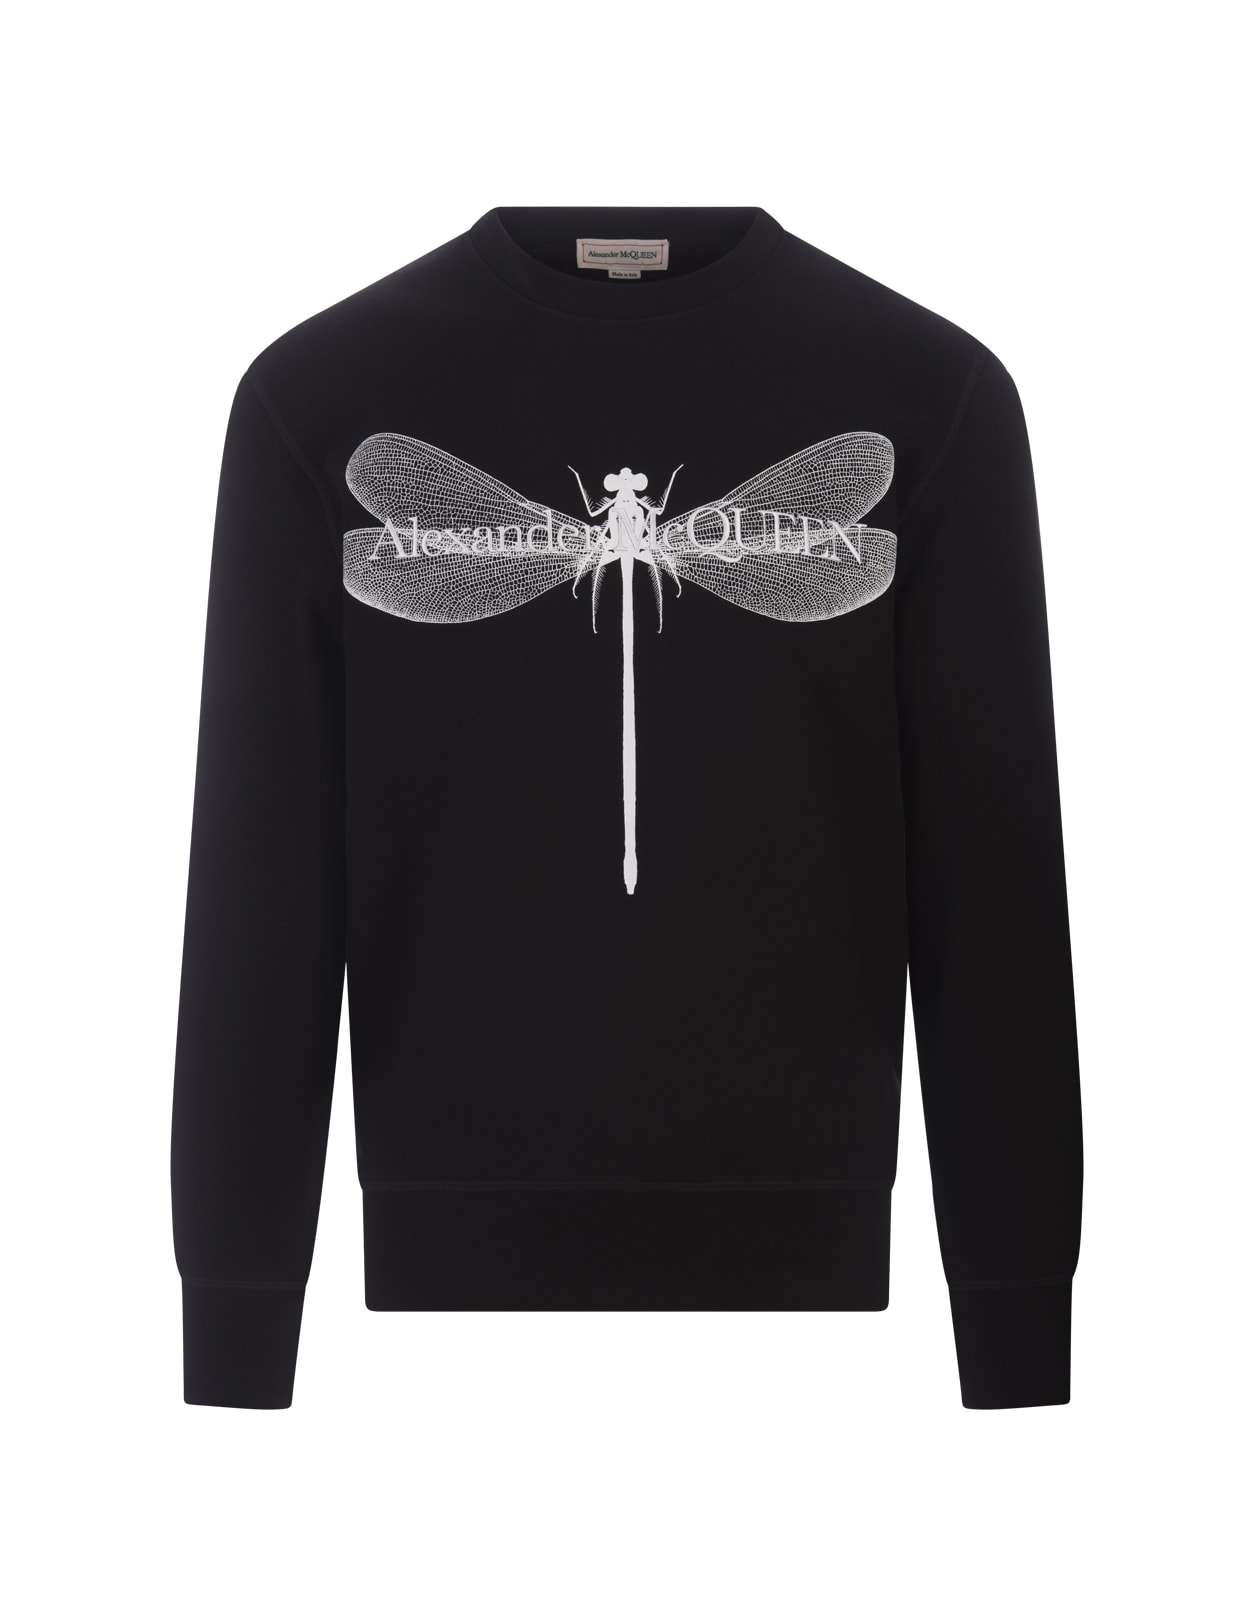 Shop Alexander Mcqueen Black Dragonfly Sweatshirt